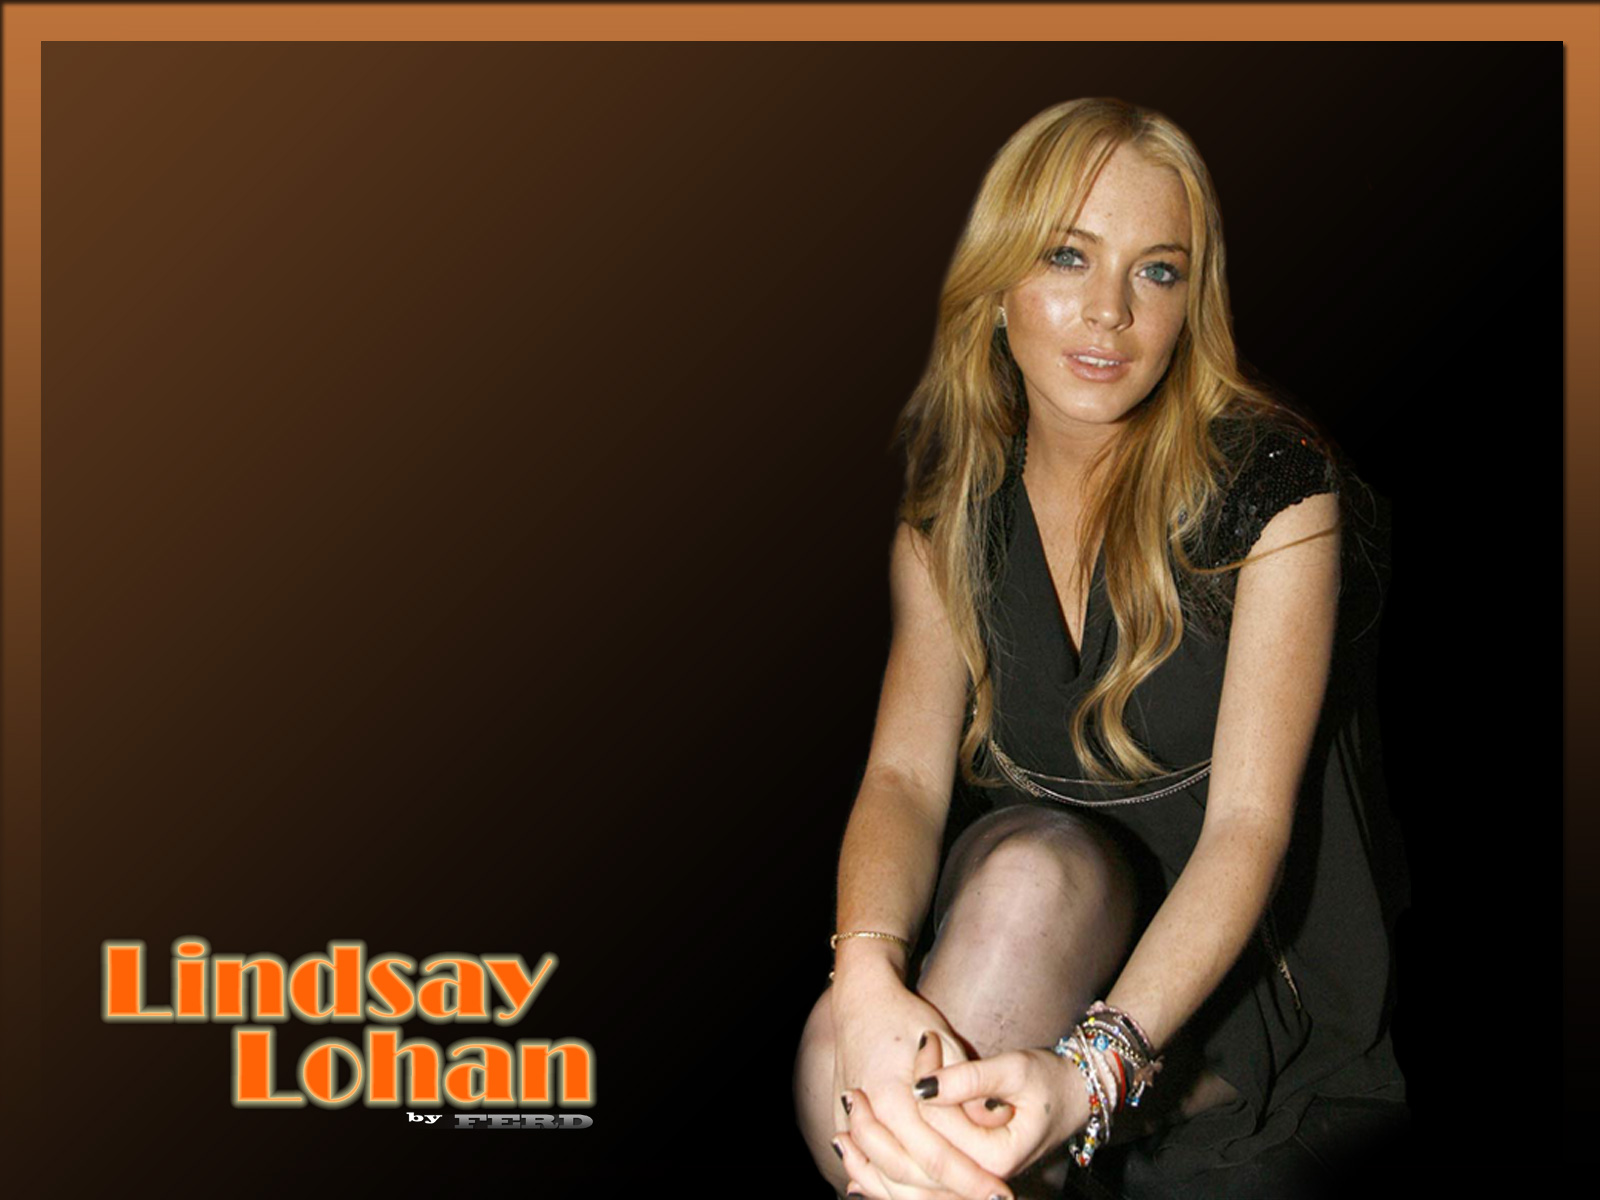 Lindsay lohan 81